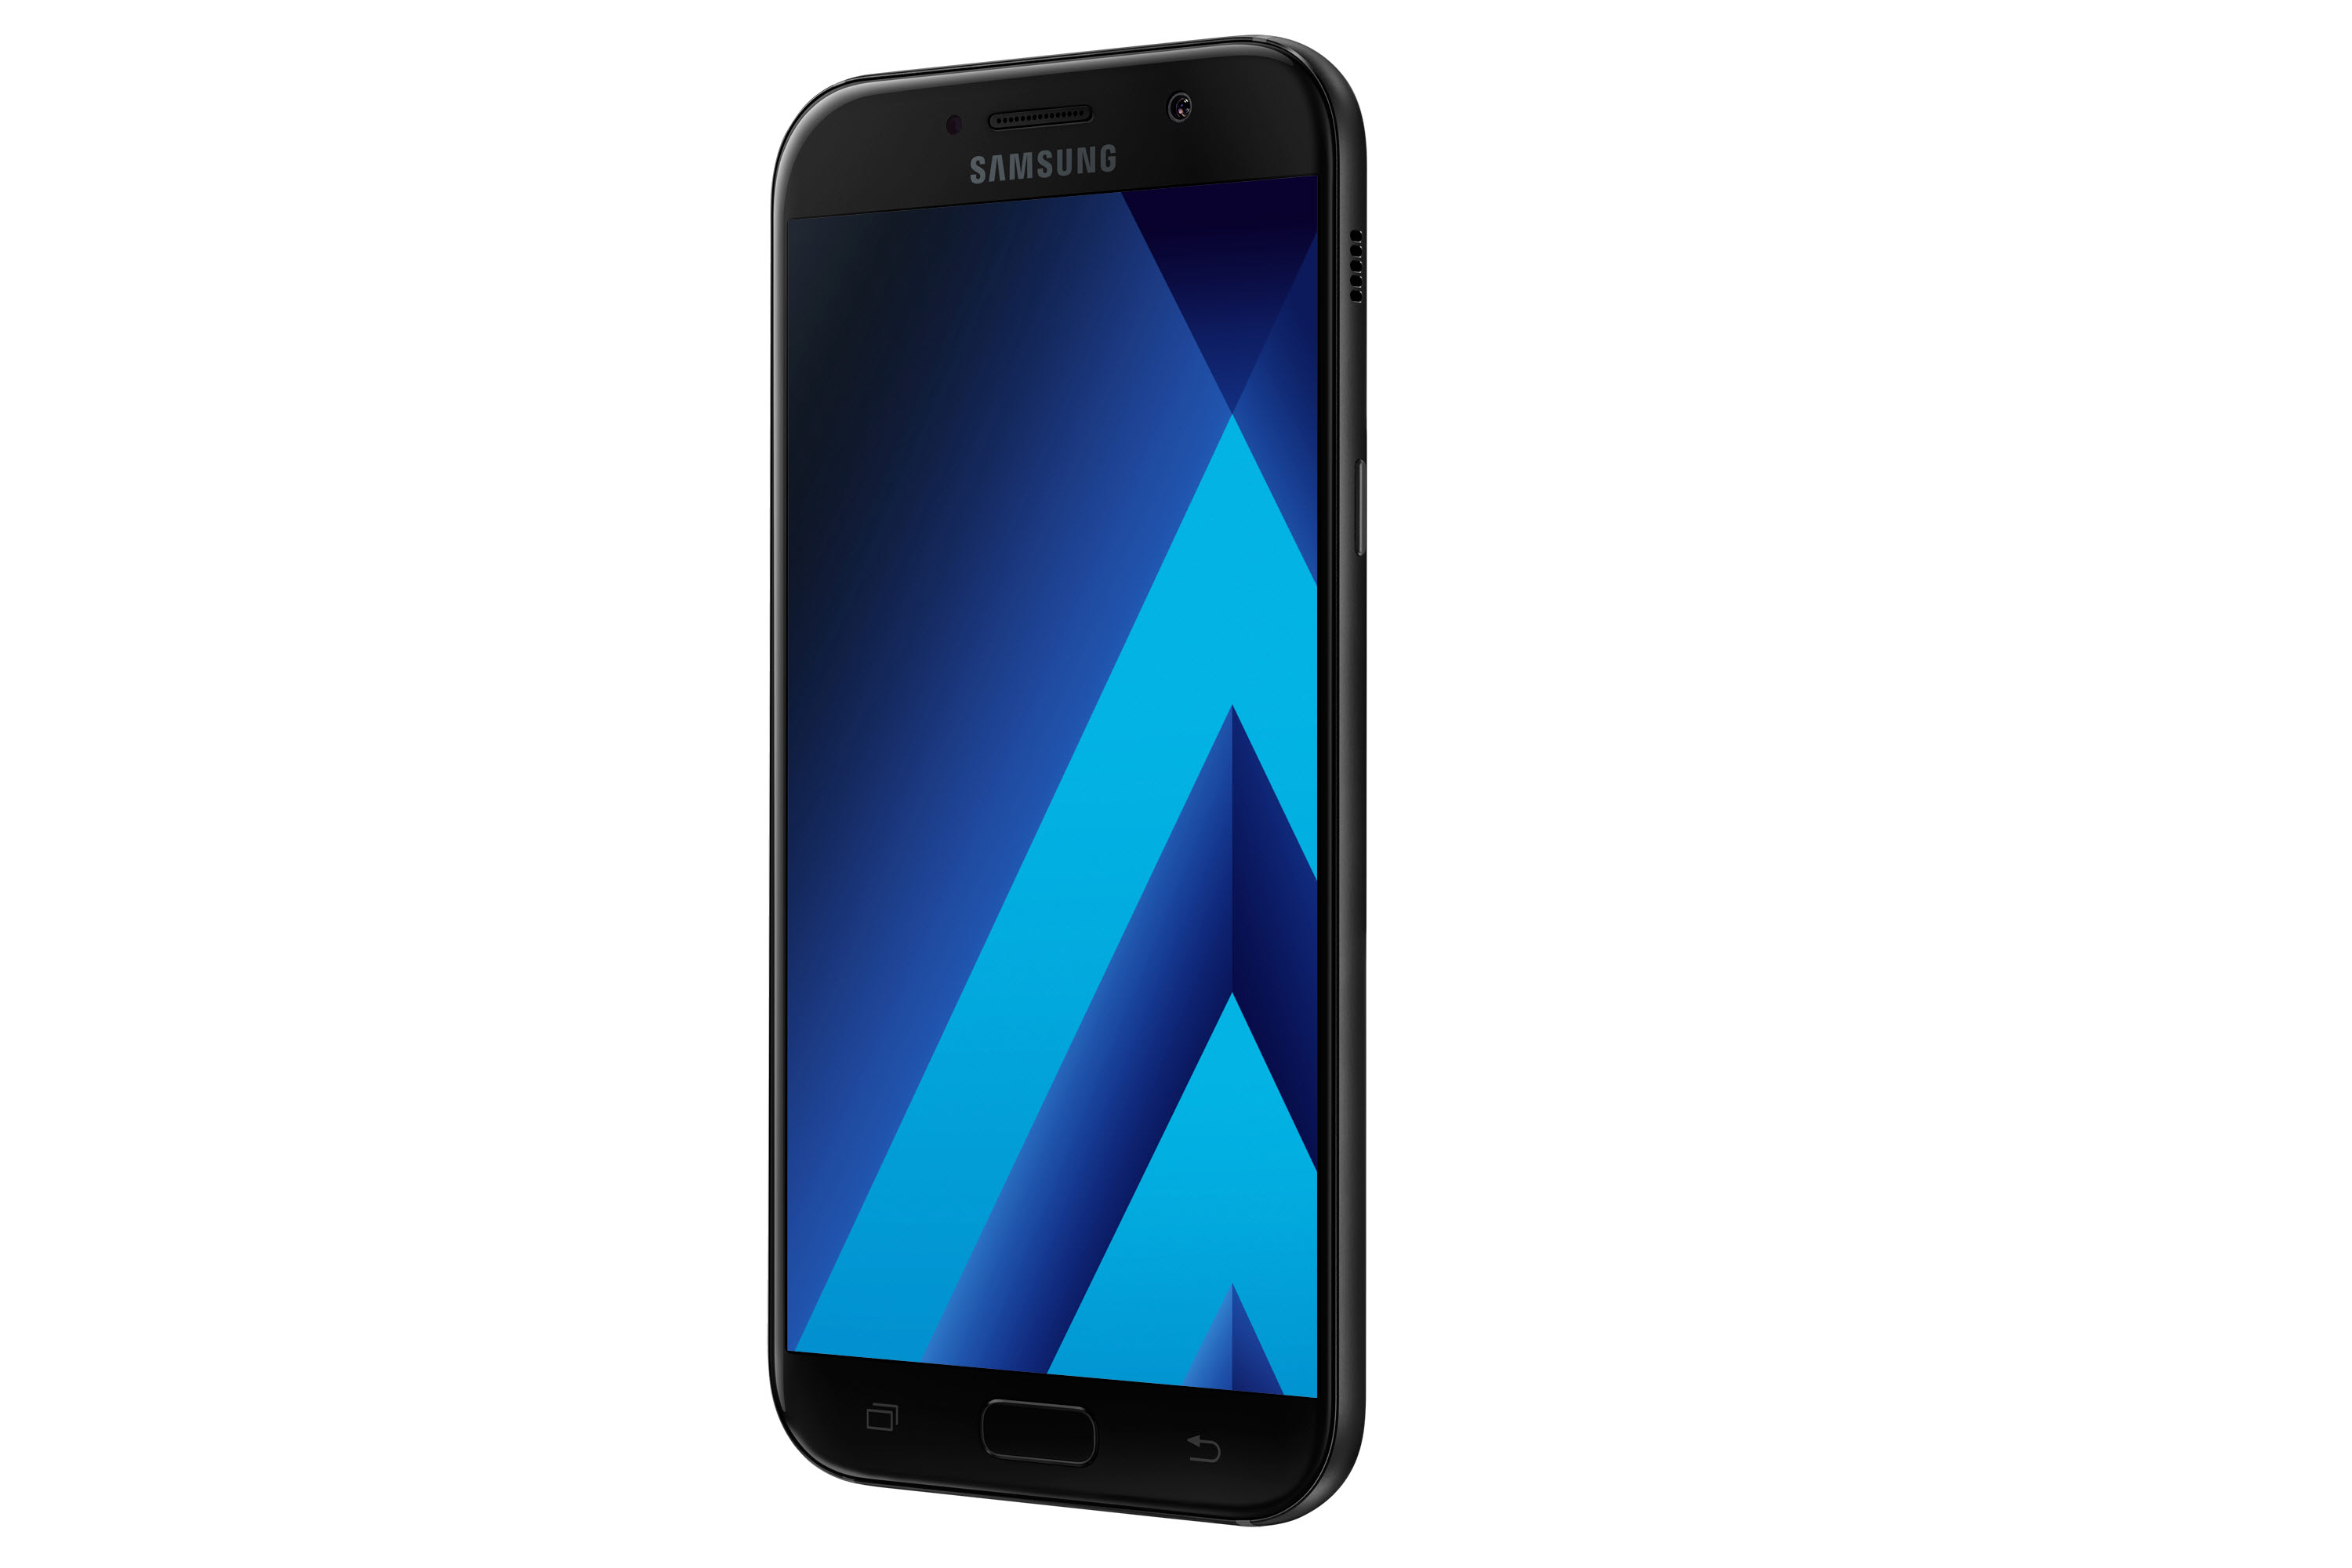 Immagine pubblicata in relazione al seguente contenuto: Samsung annuncia gli smartphone Galaxy A3, Galaxy A5 e Galaxy A7 (2017) | Nome immagine: news25555_Galaxy-A7_Black-Sky_1.jpg